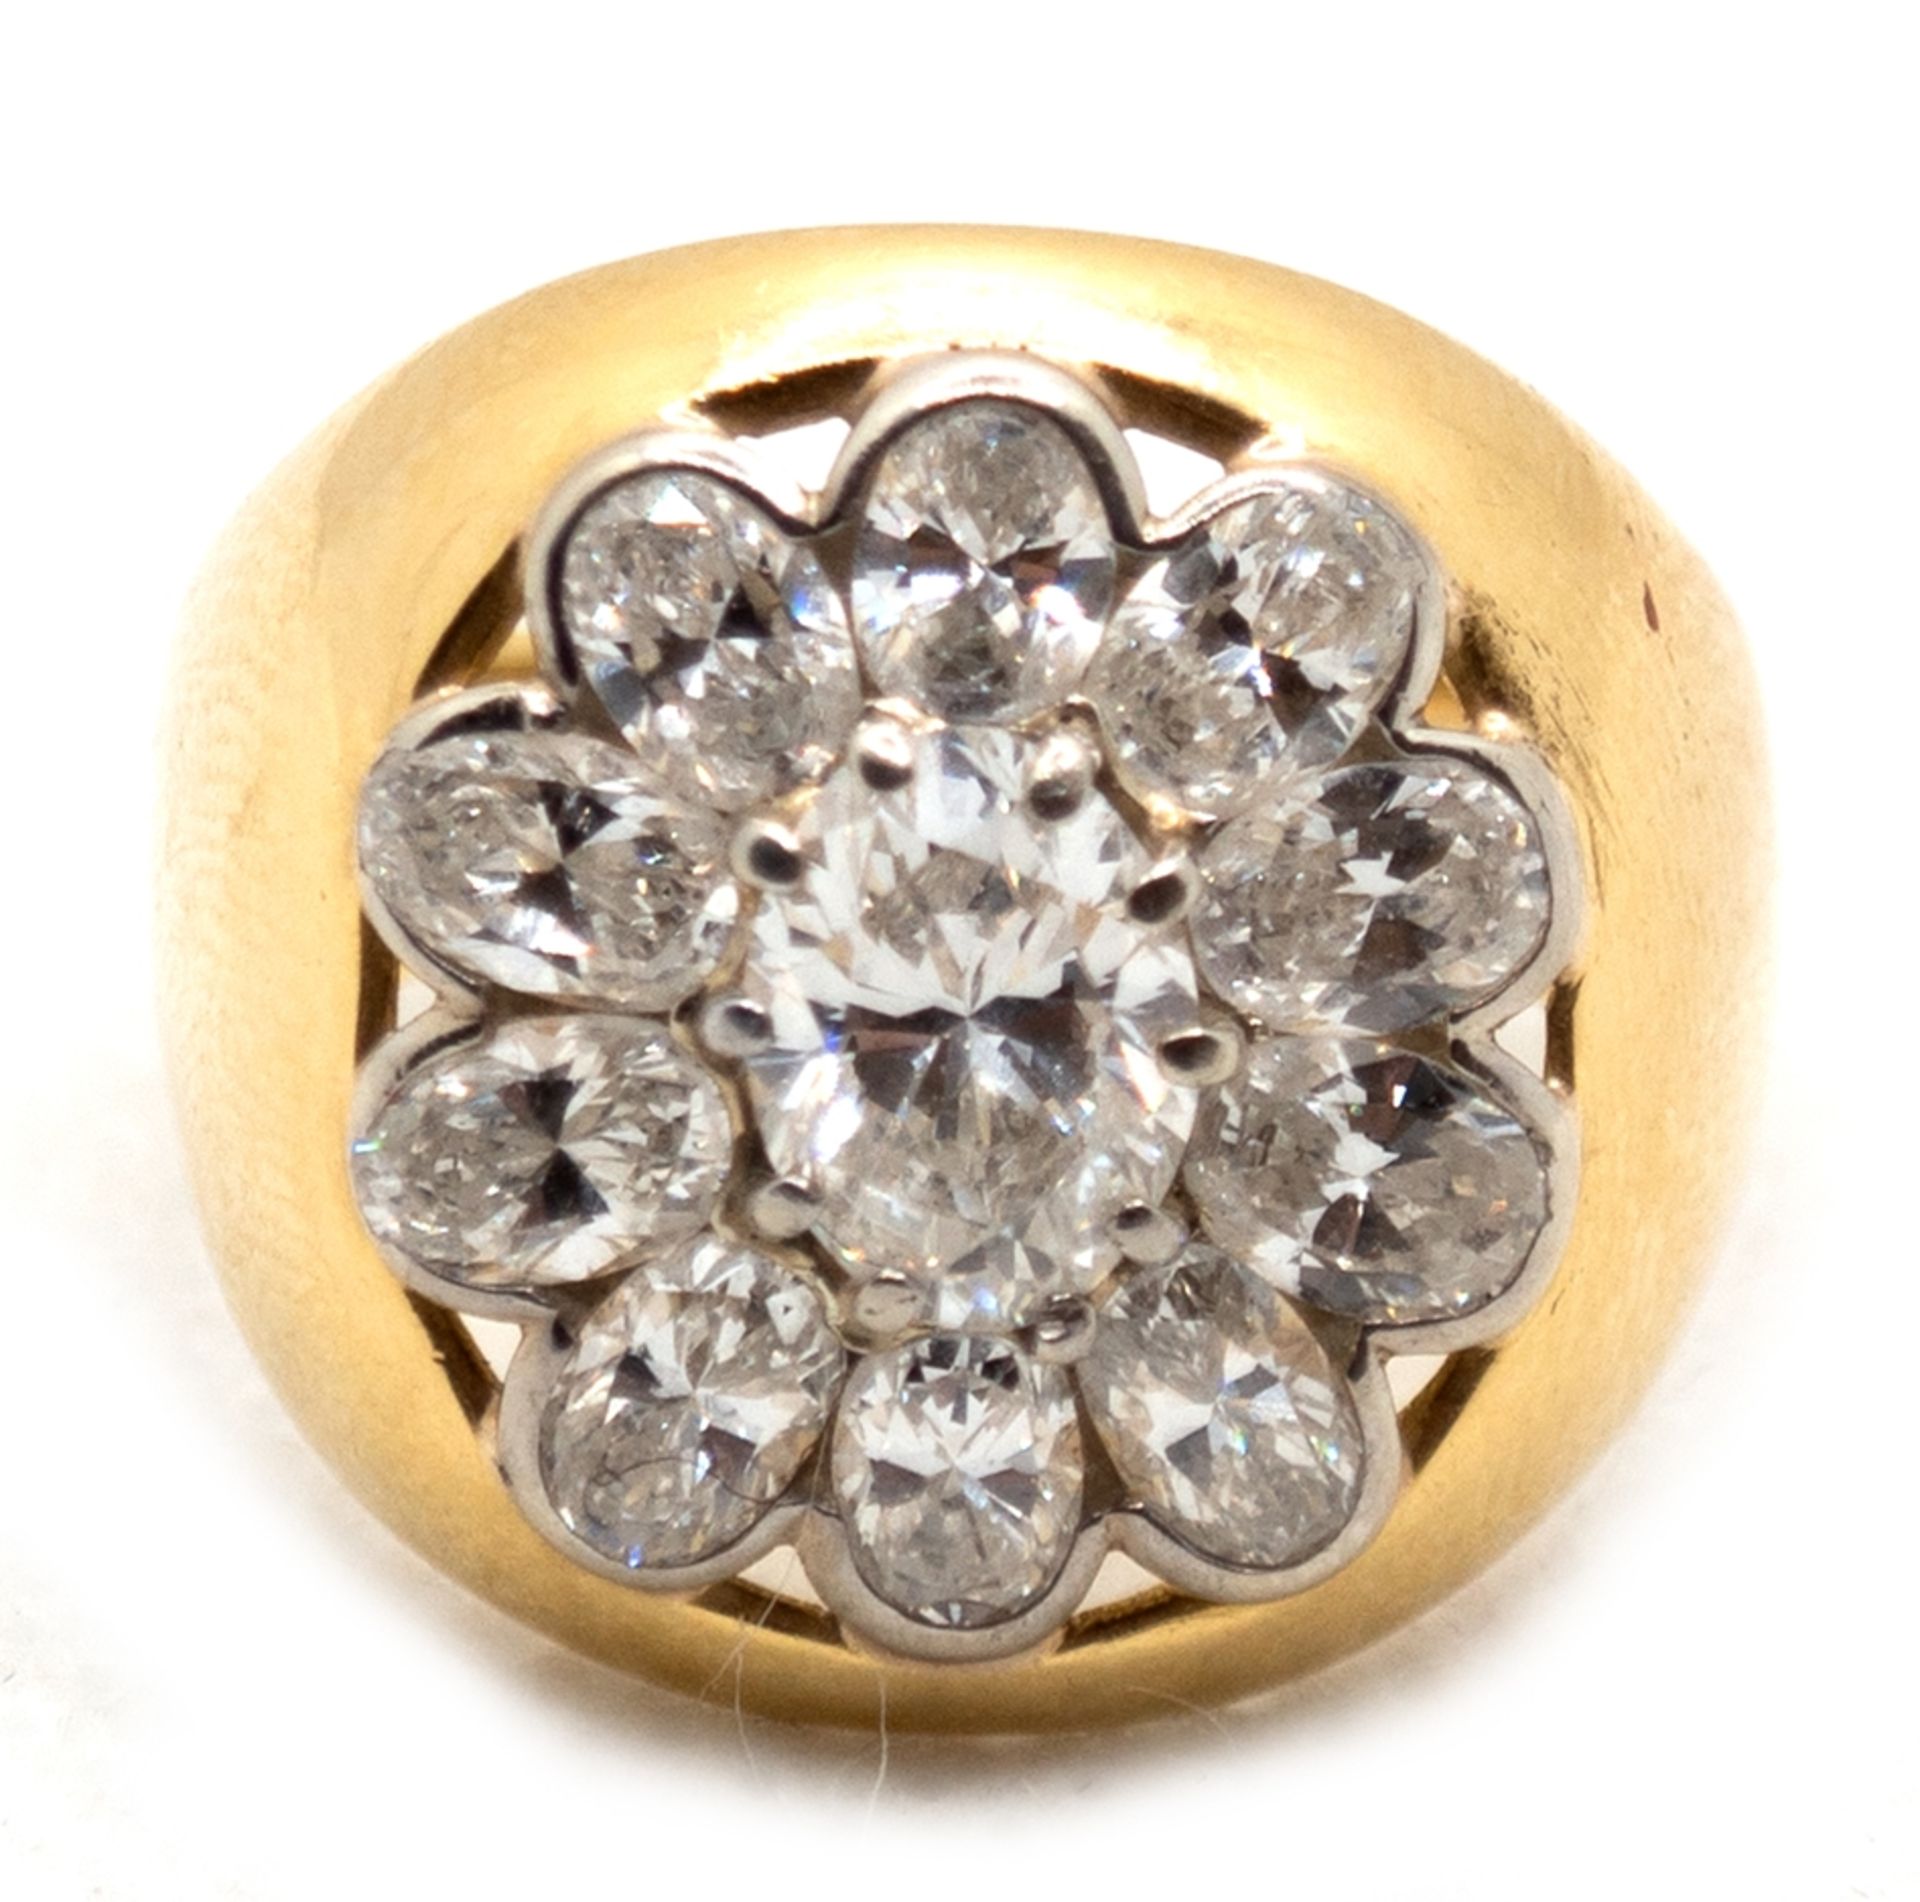 Diamant-Ring, 750er Gold, mit 11 Diamanten im Ovalschliff von zus. ca. 2,3 ct., ges. 9,1 g, RG 55